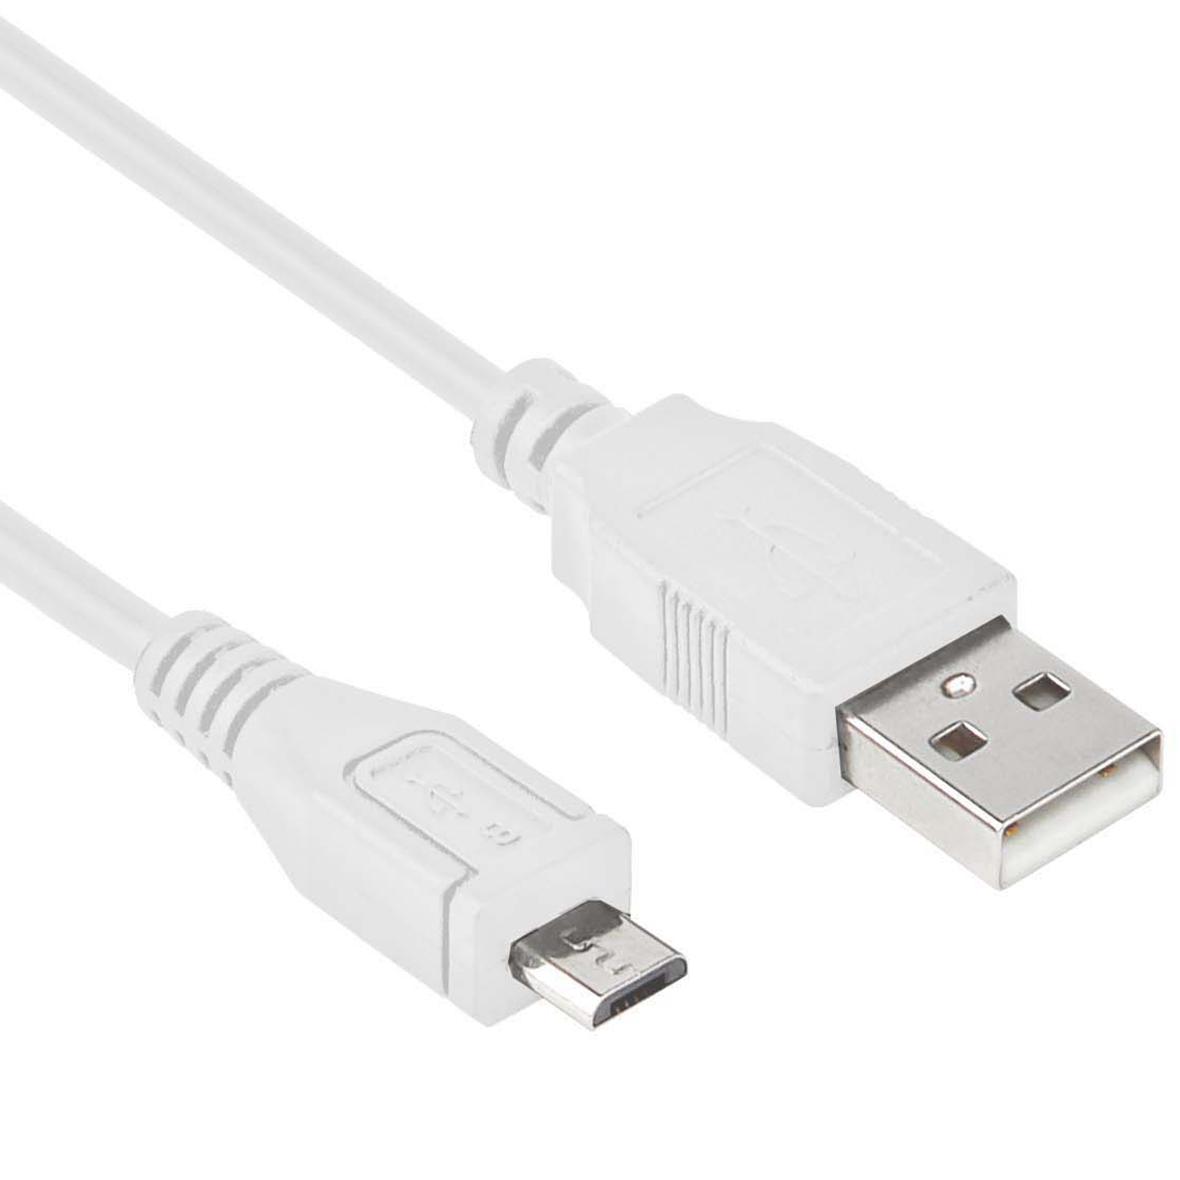 Eik Goodwill Pelagisch USB 2.0 A naar Micro B Kabel - Micro USB 2.0 kabel, Connector 1: USB A  male, Connector 2: Micro USB B male, Kleur: Wit, 1 meter